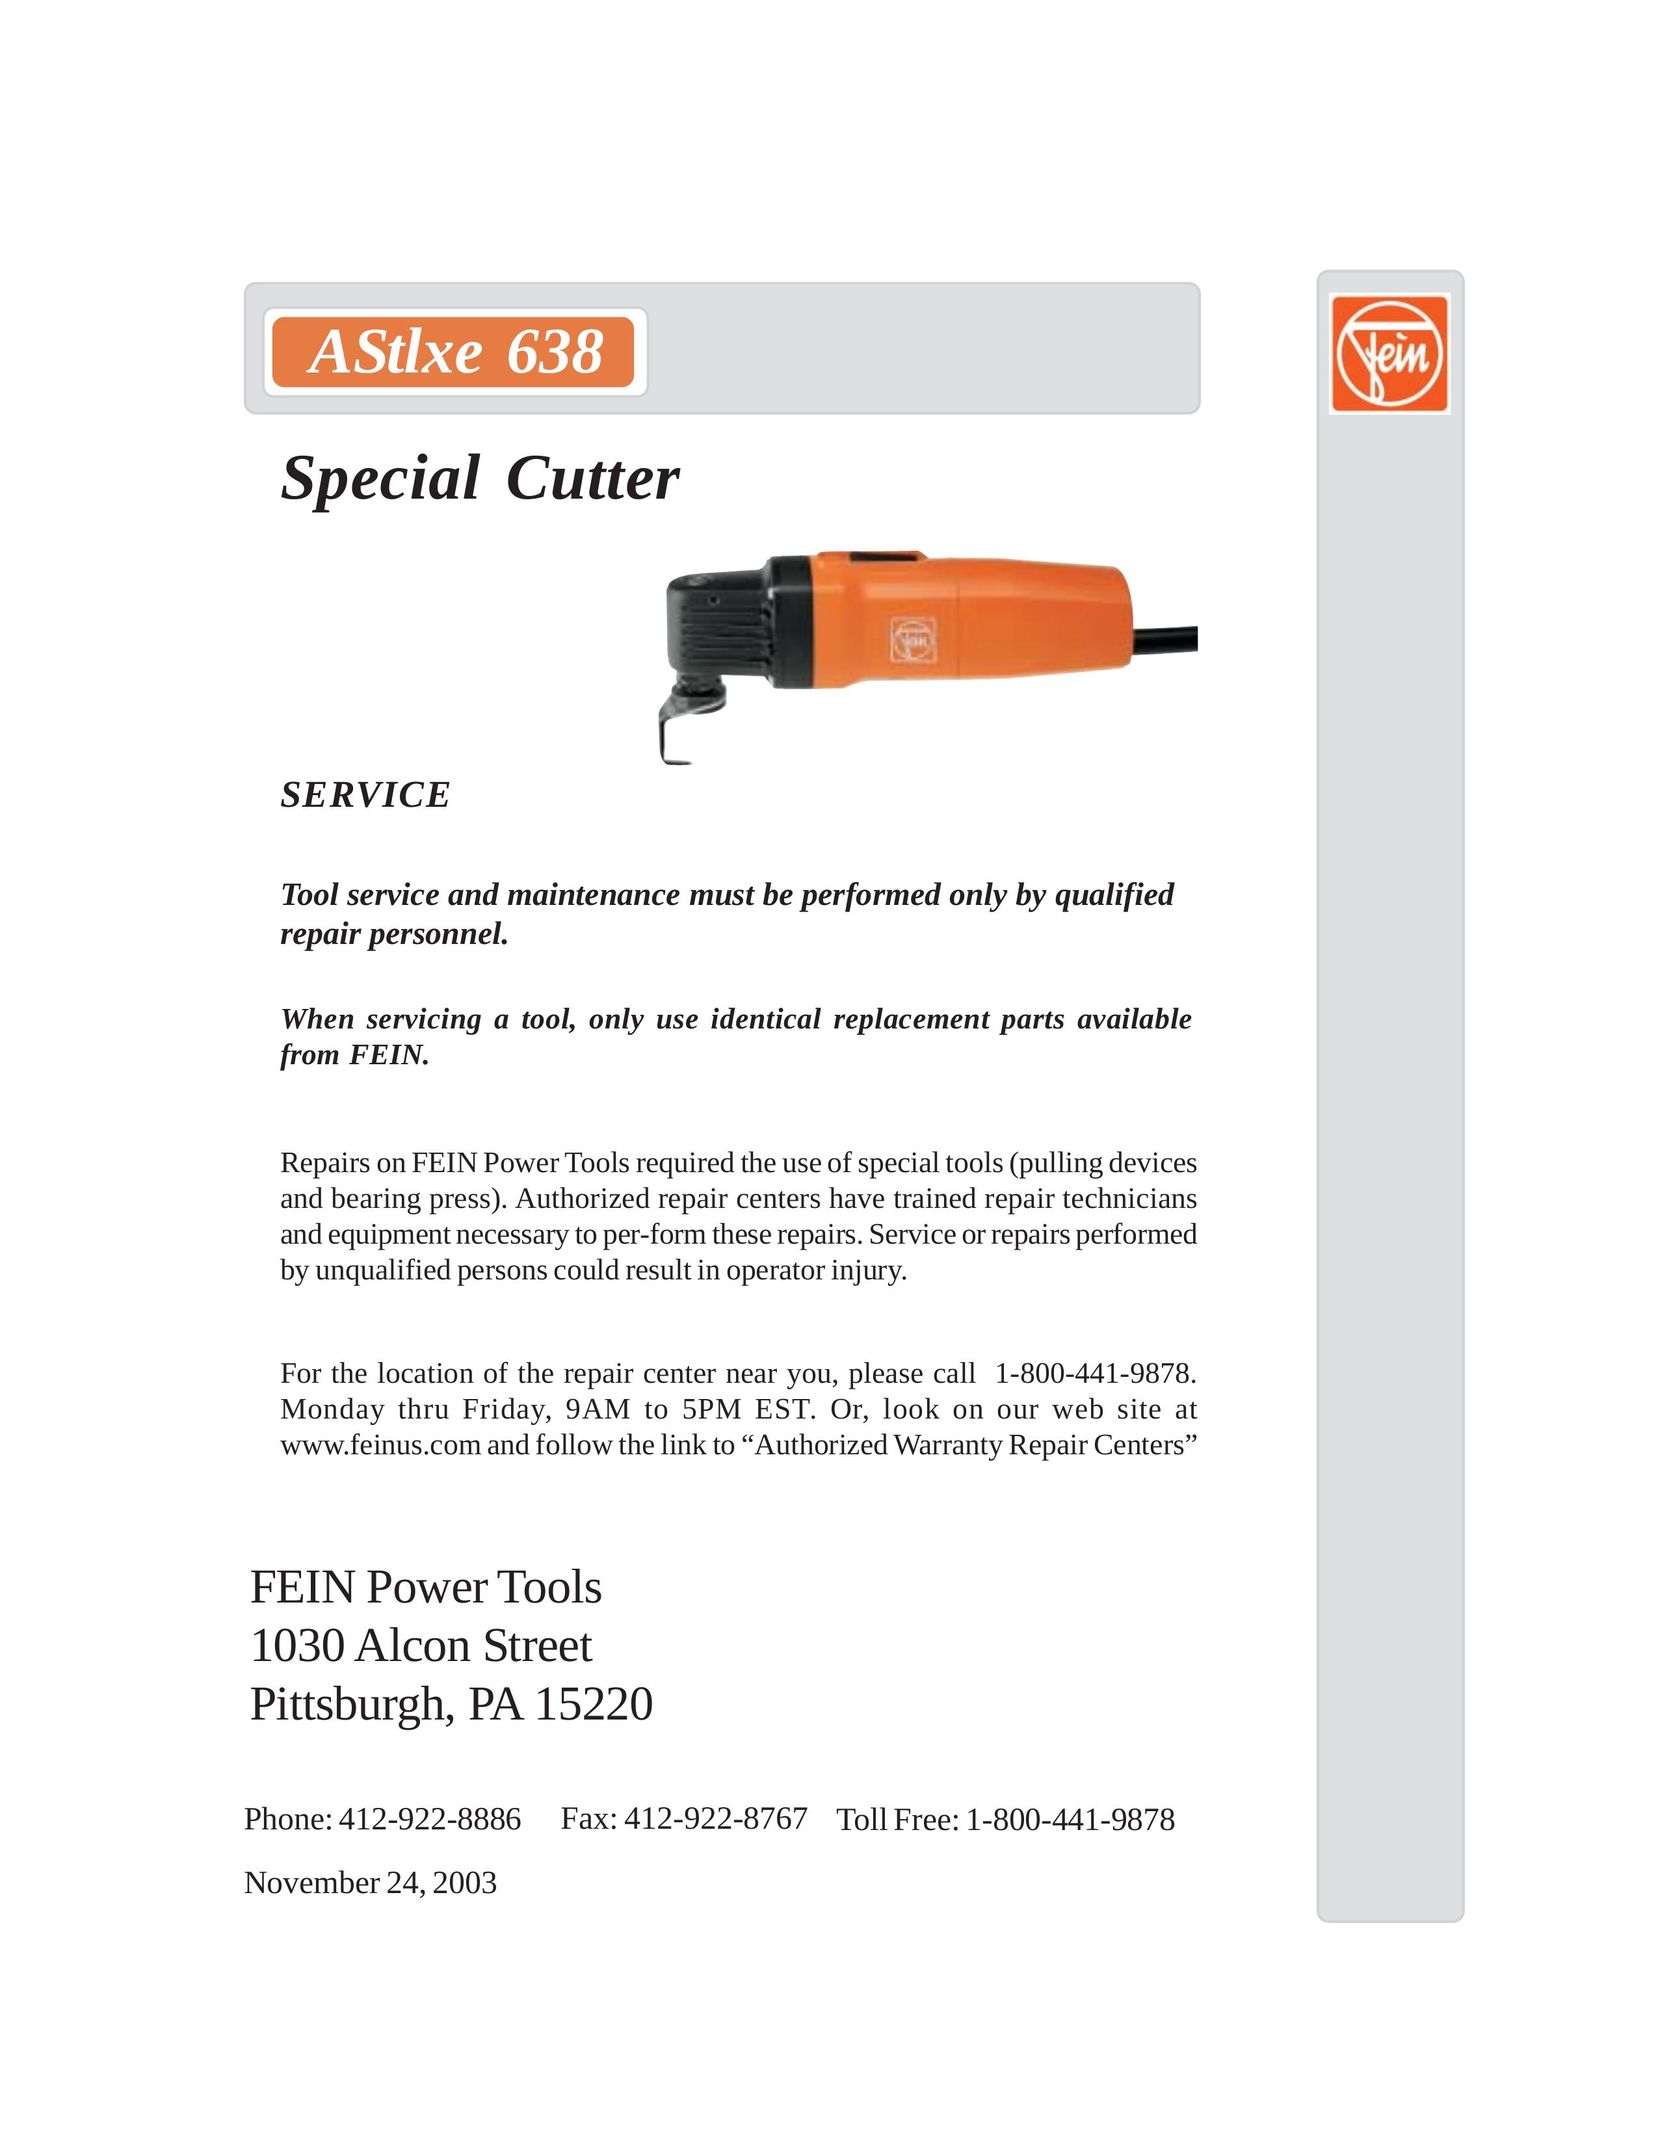 FEIN Power Tools AStlxe 638 Welder User Manual